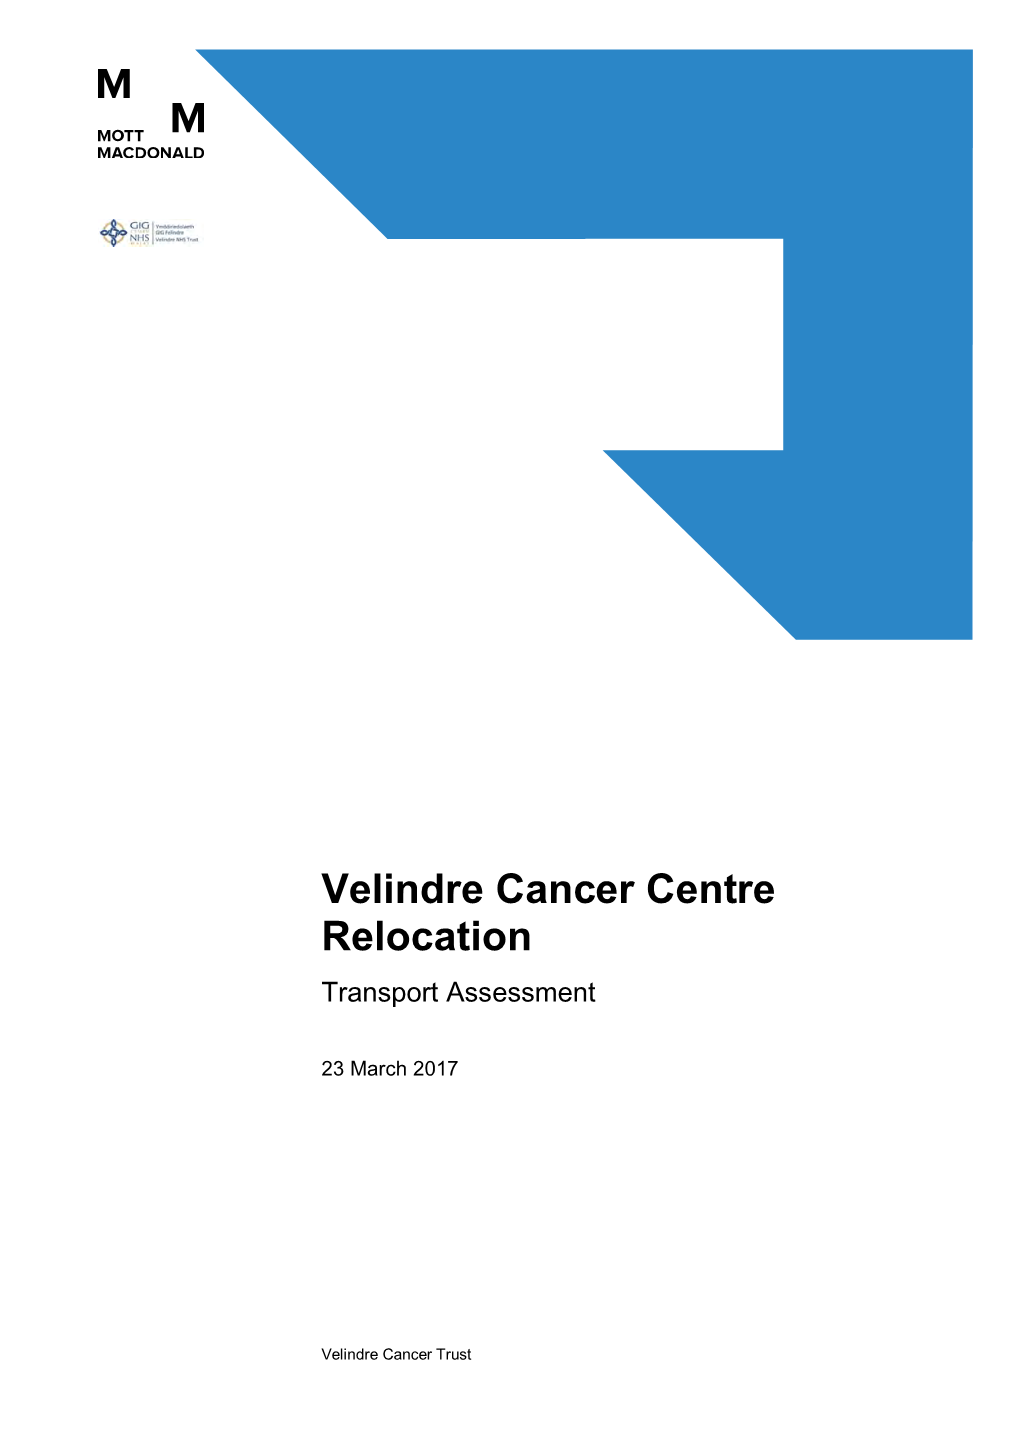 Velindre Cancer Centre Relocation Transport Assessment